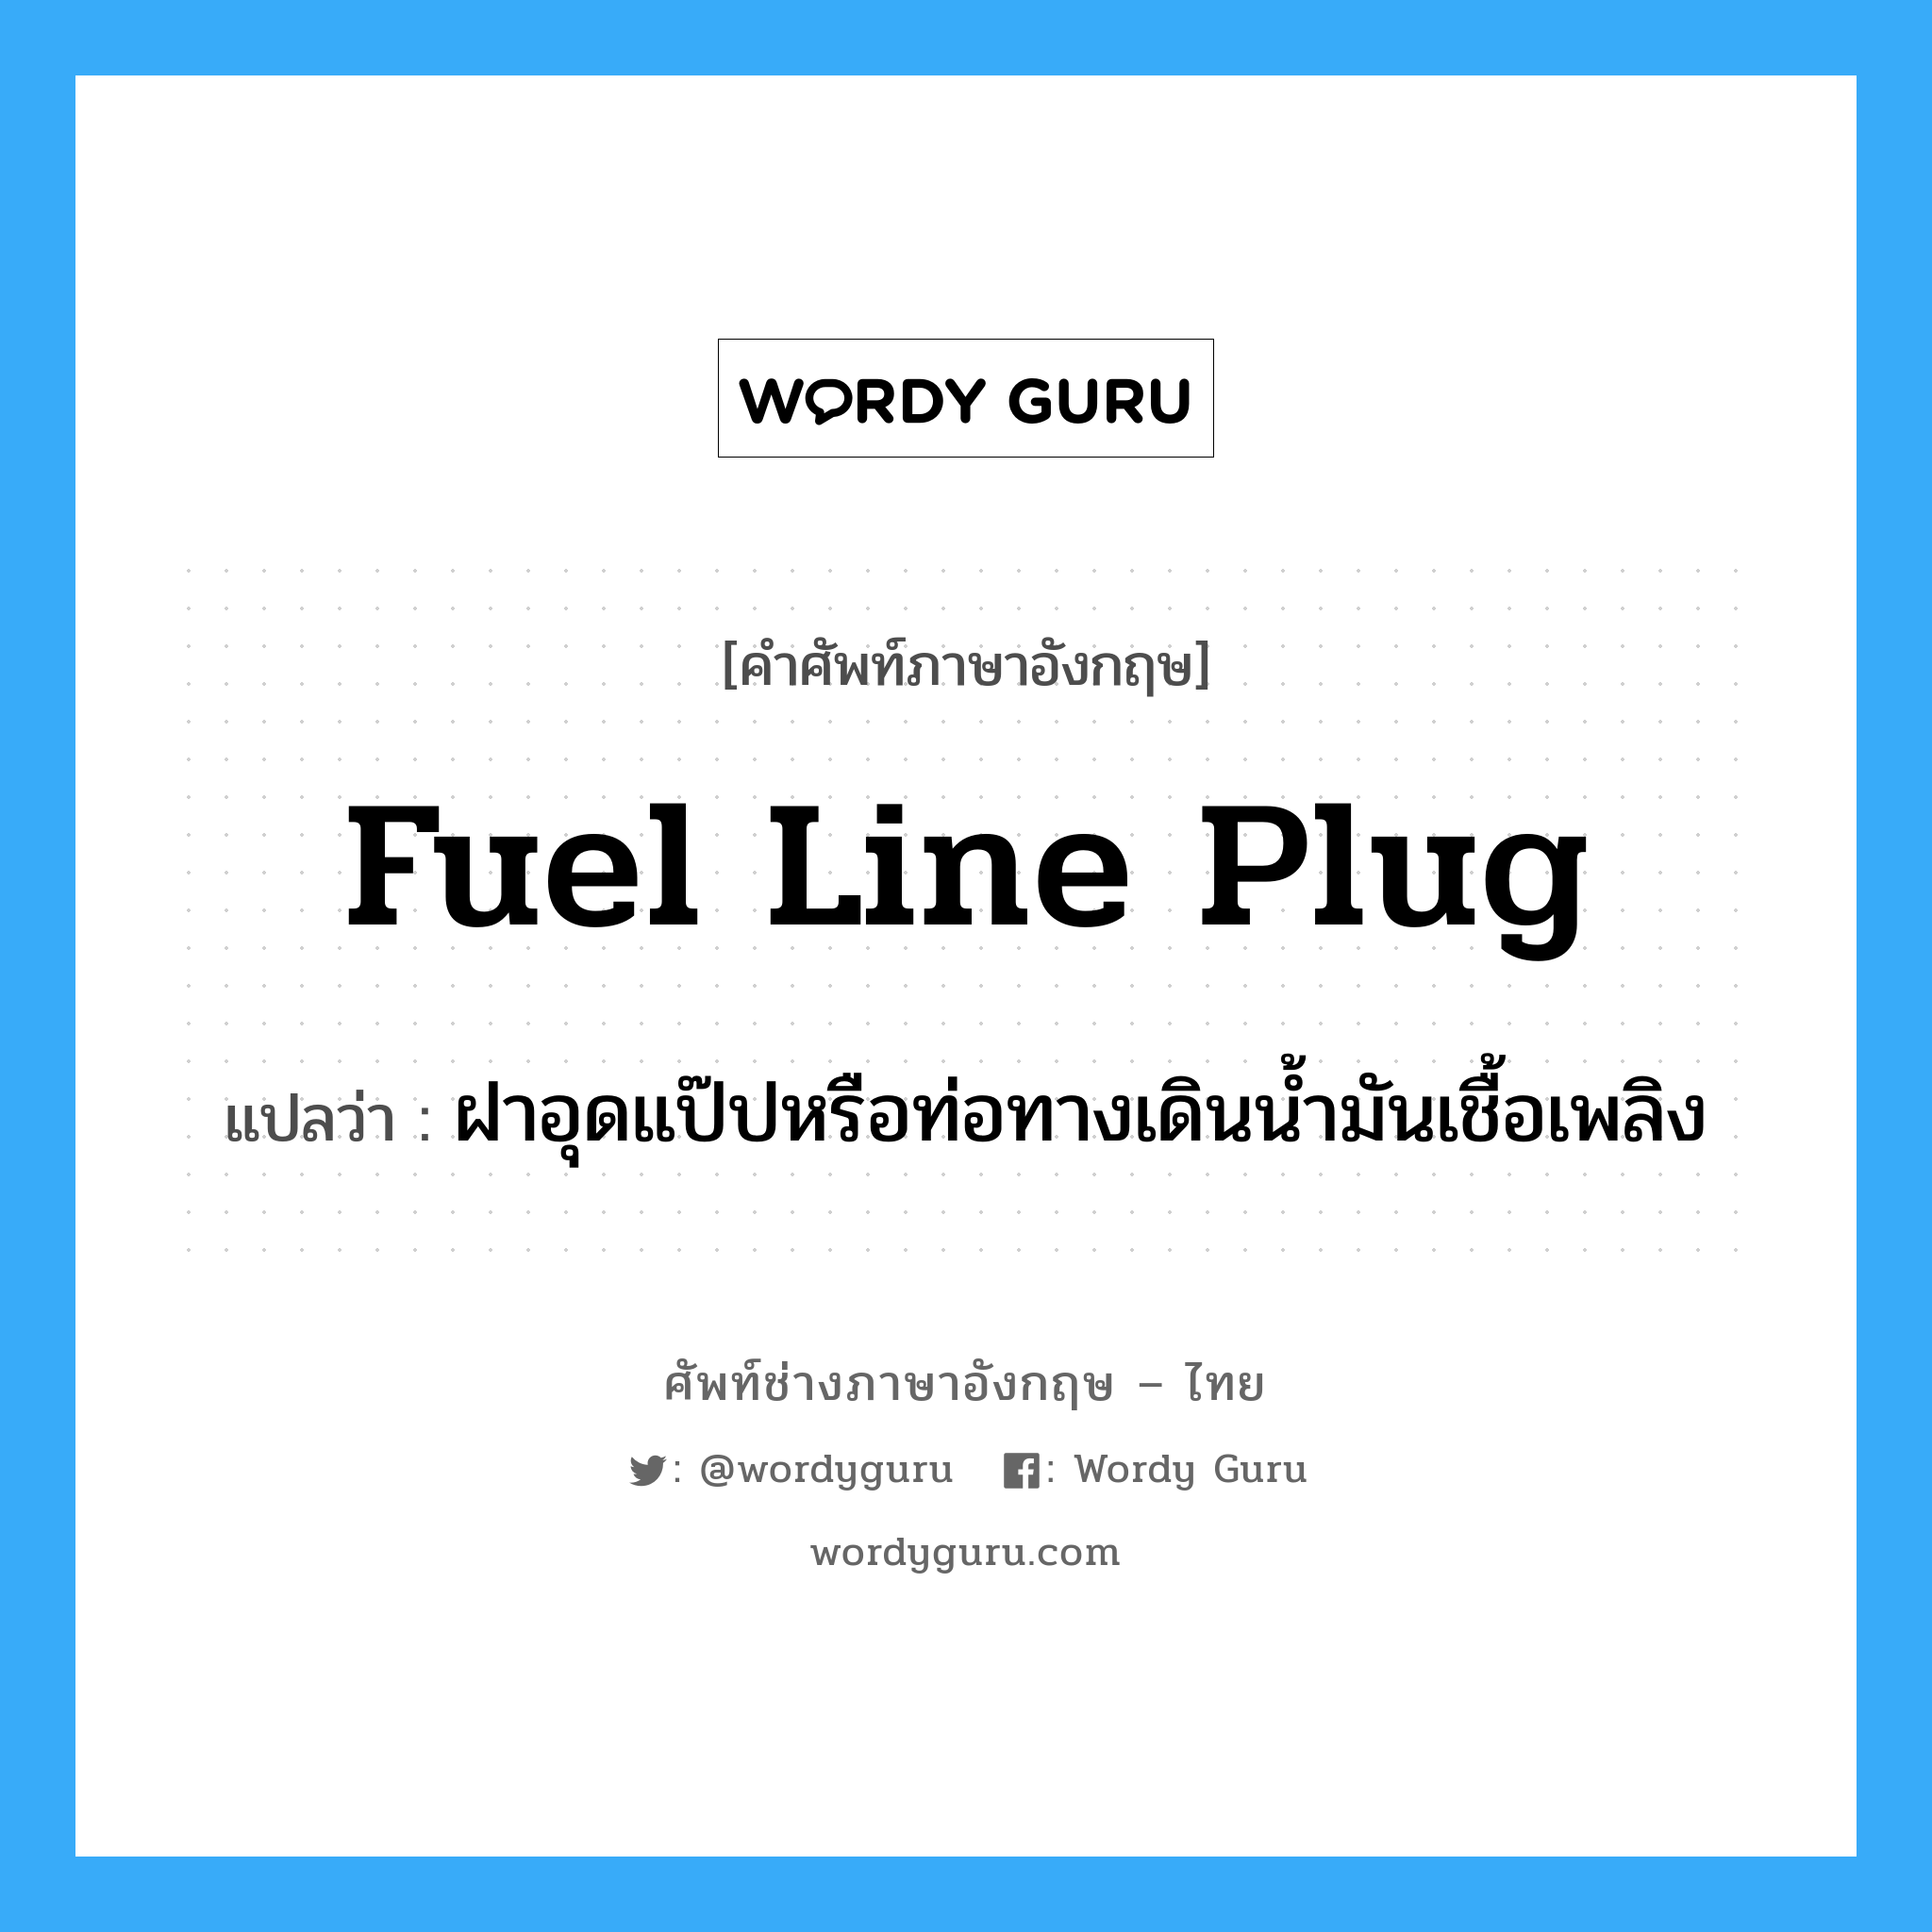 fuel line plug แปลว่า?, คำศัพท์ช่างภาษาอังกฤษ - ไทย fuel line plug คำศัพท์ภาษาอังกฤษ fuel line plug แปลว่า ฝาอุดแป๊ปหรือท่อทางเดินน้ำมันเชื้อเพลิง